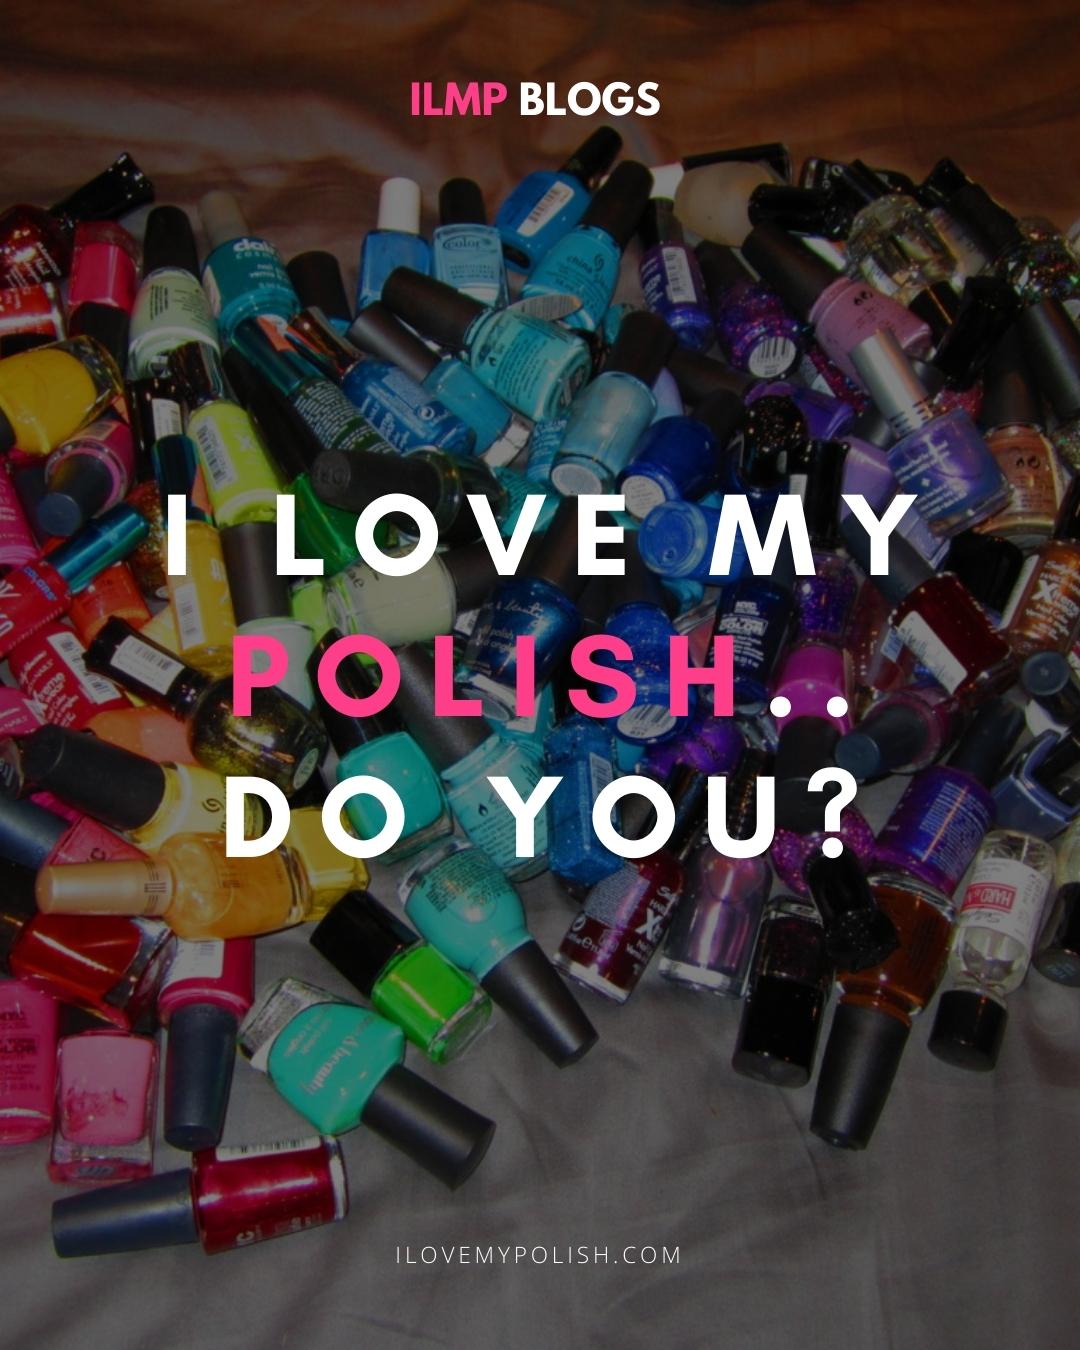 I LOVE MY POLISH ,DO YOU?